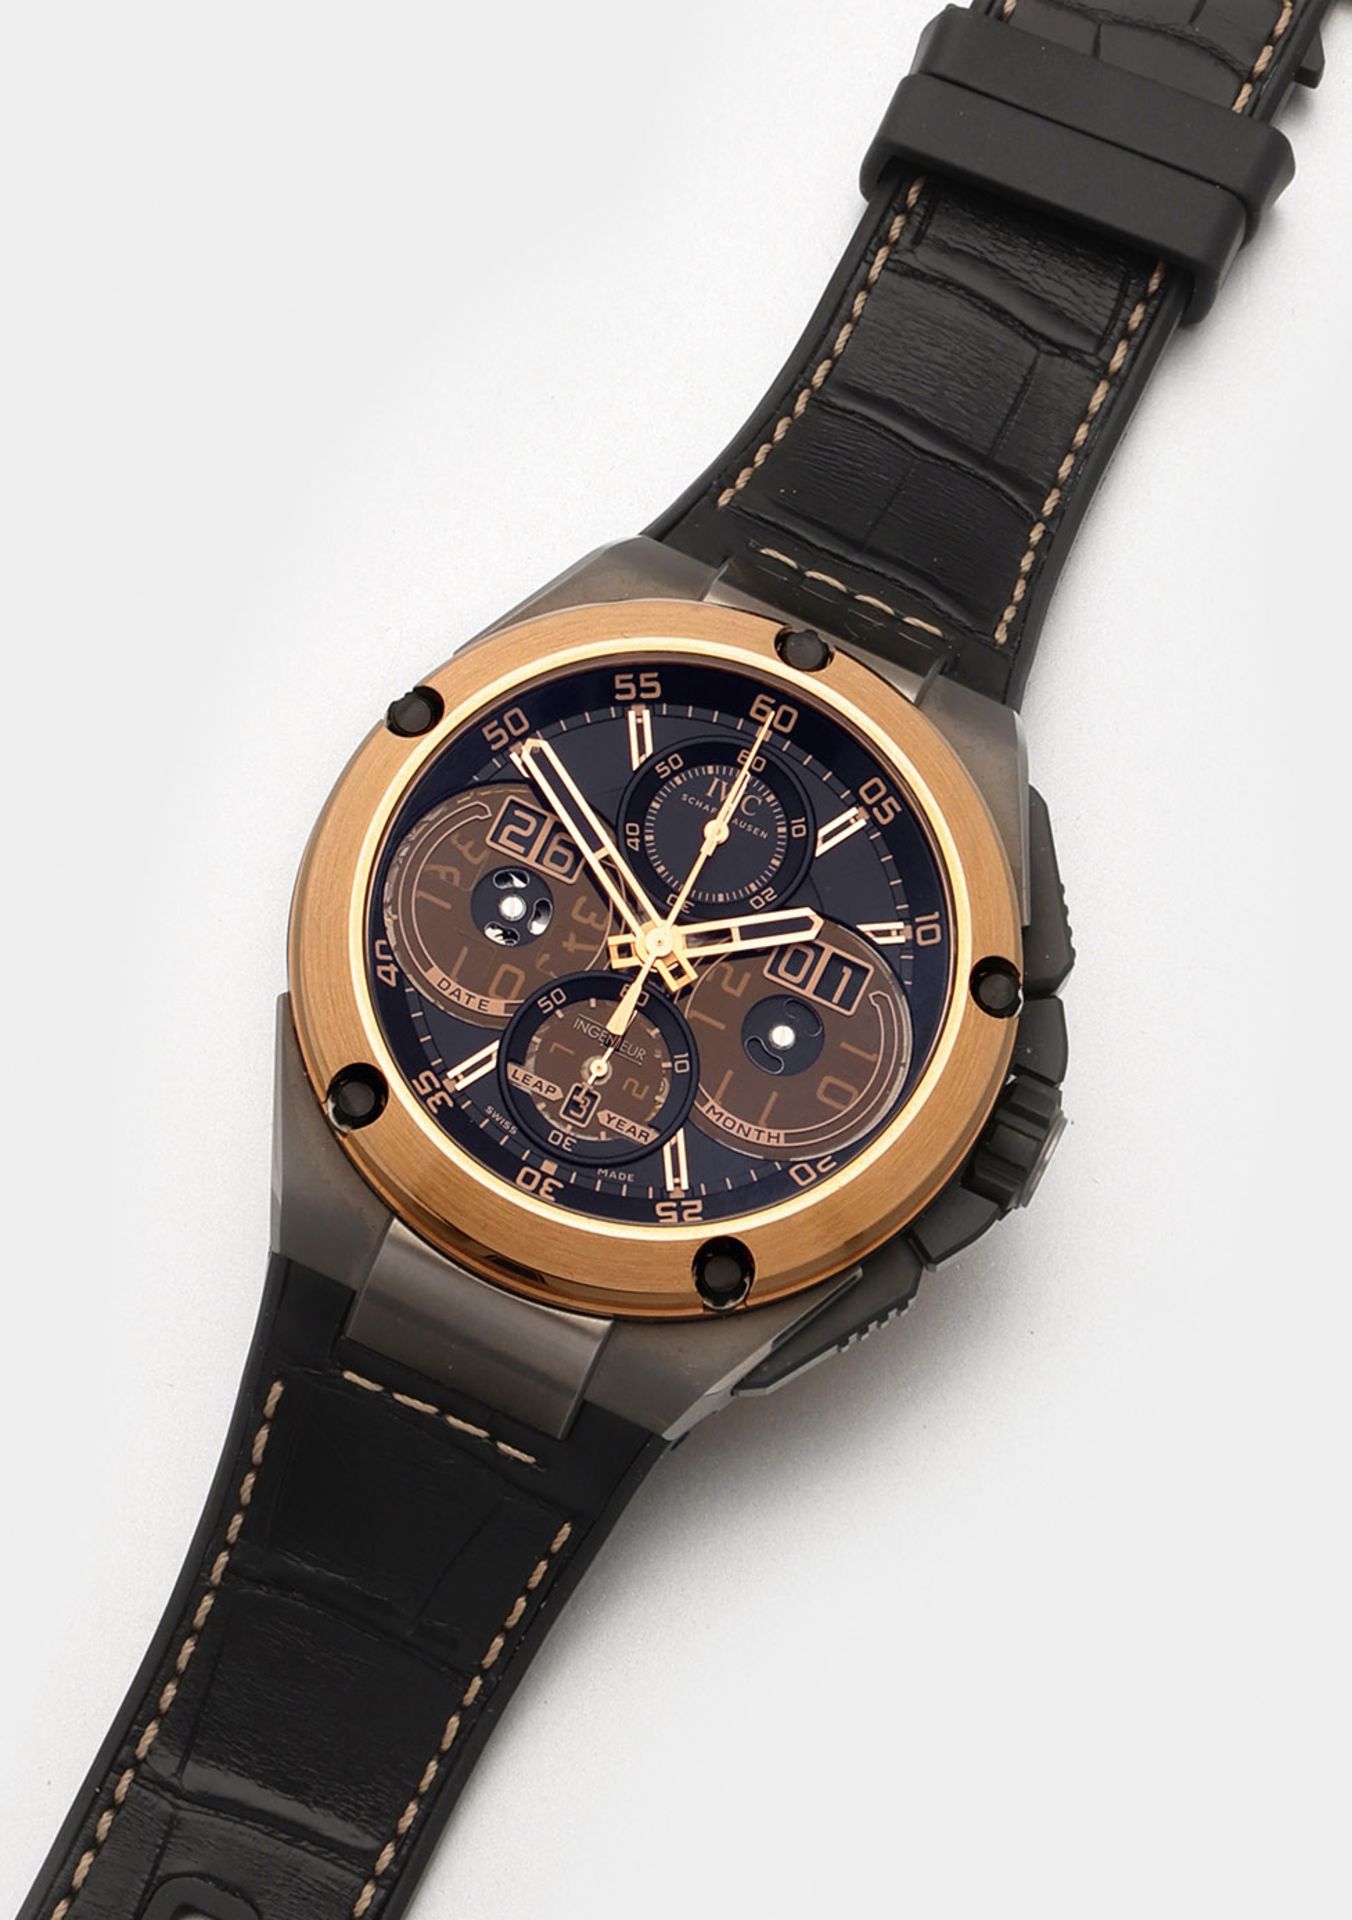 Herren-Armbanduhr von IWC-"Ingenieur" mit ewigem Kalender - Image 3 of 8